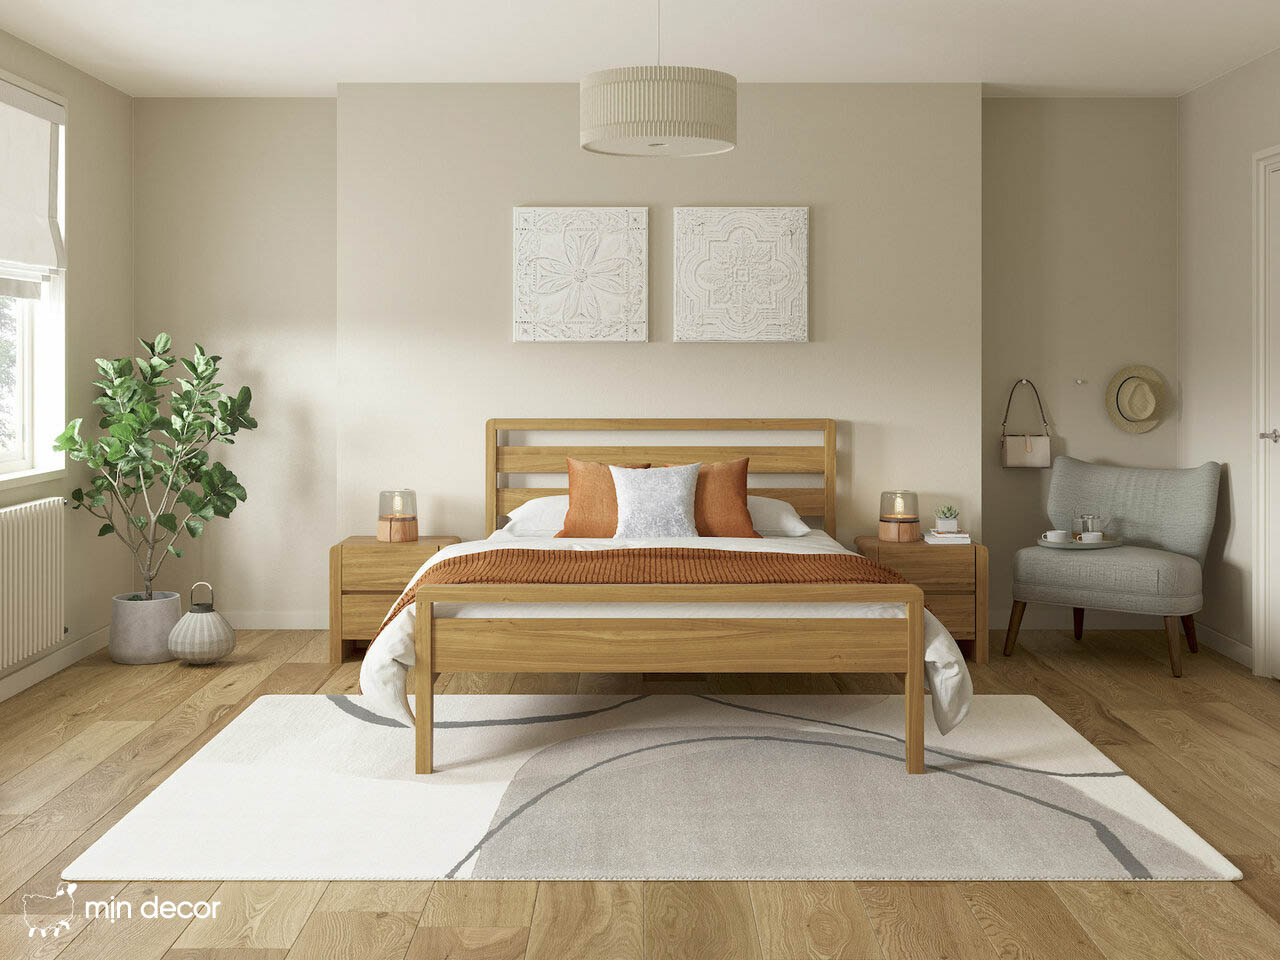 Các mẫu giường gỗ 1m6 – 2m bán chạy nhất trên thị trường